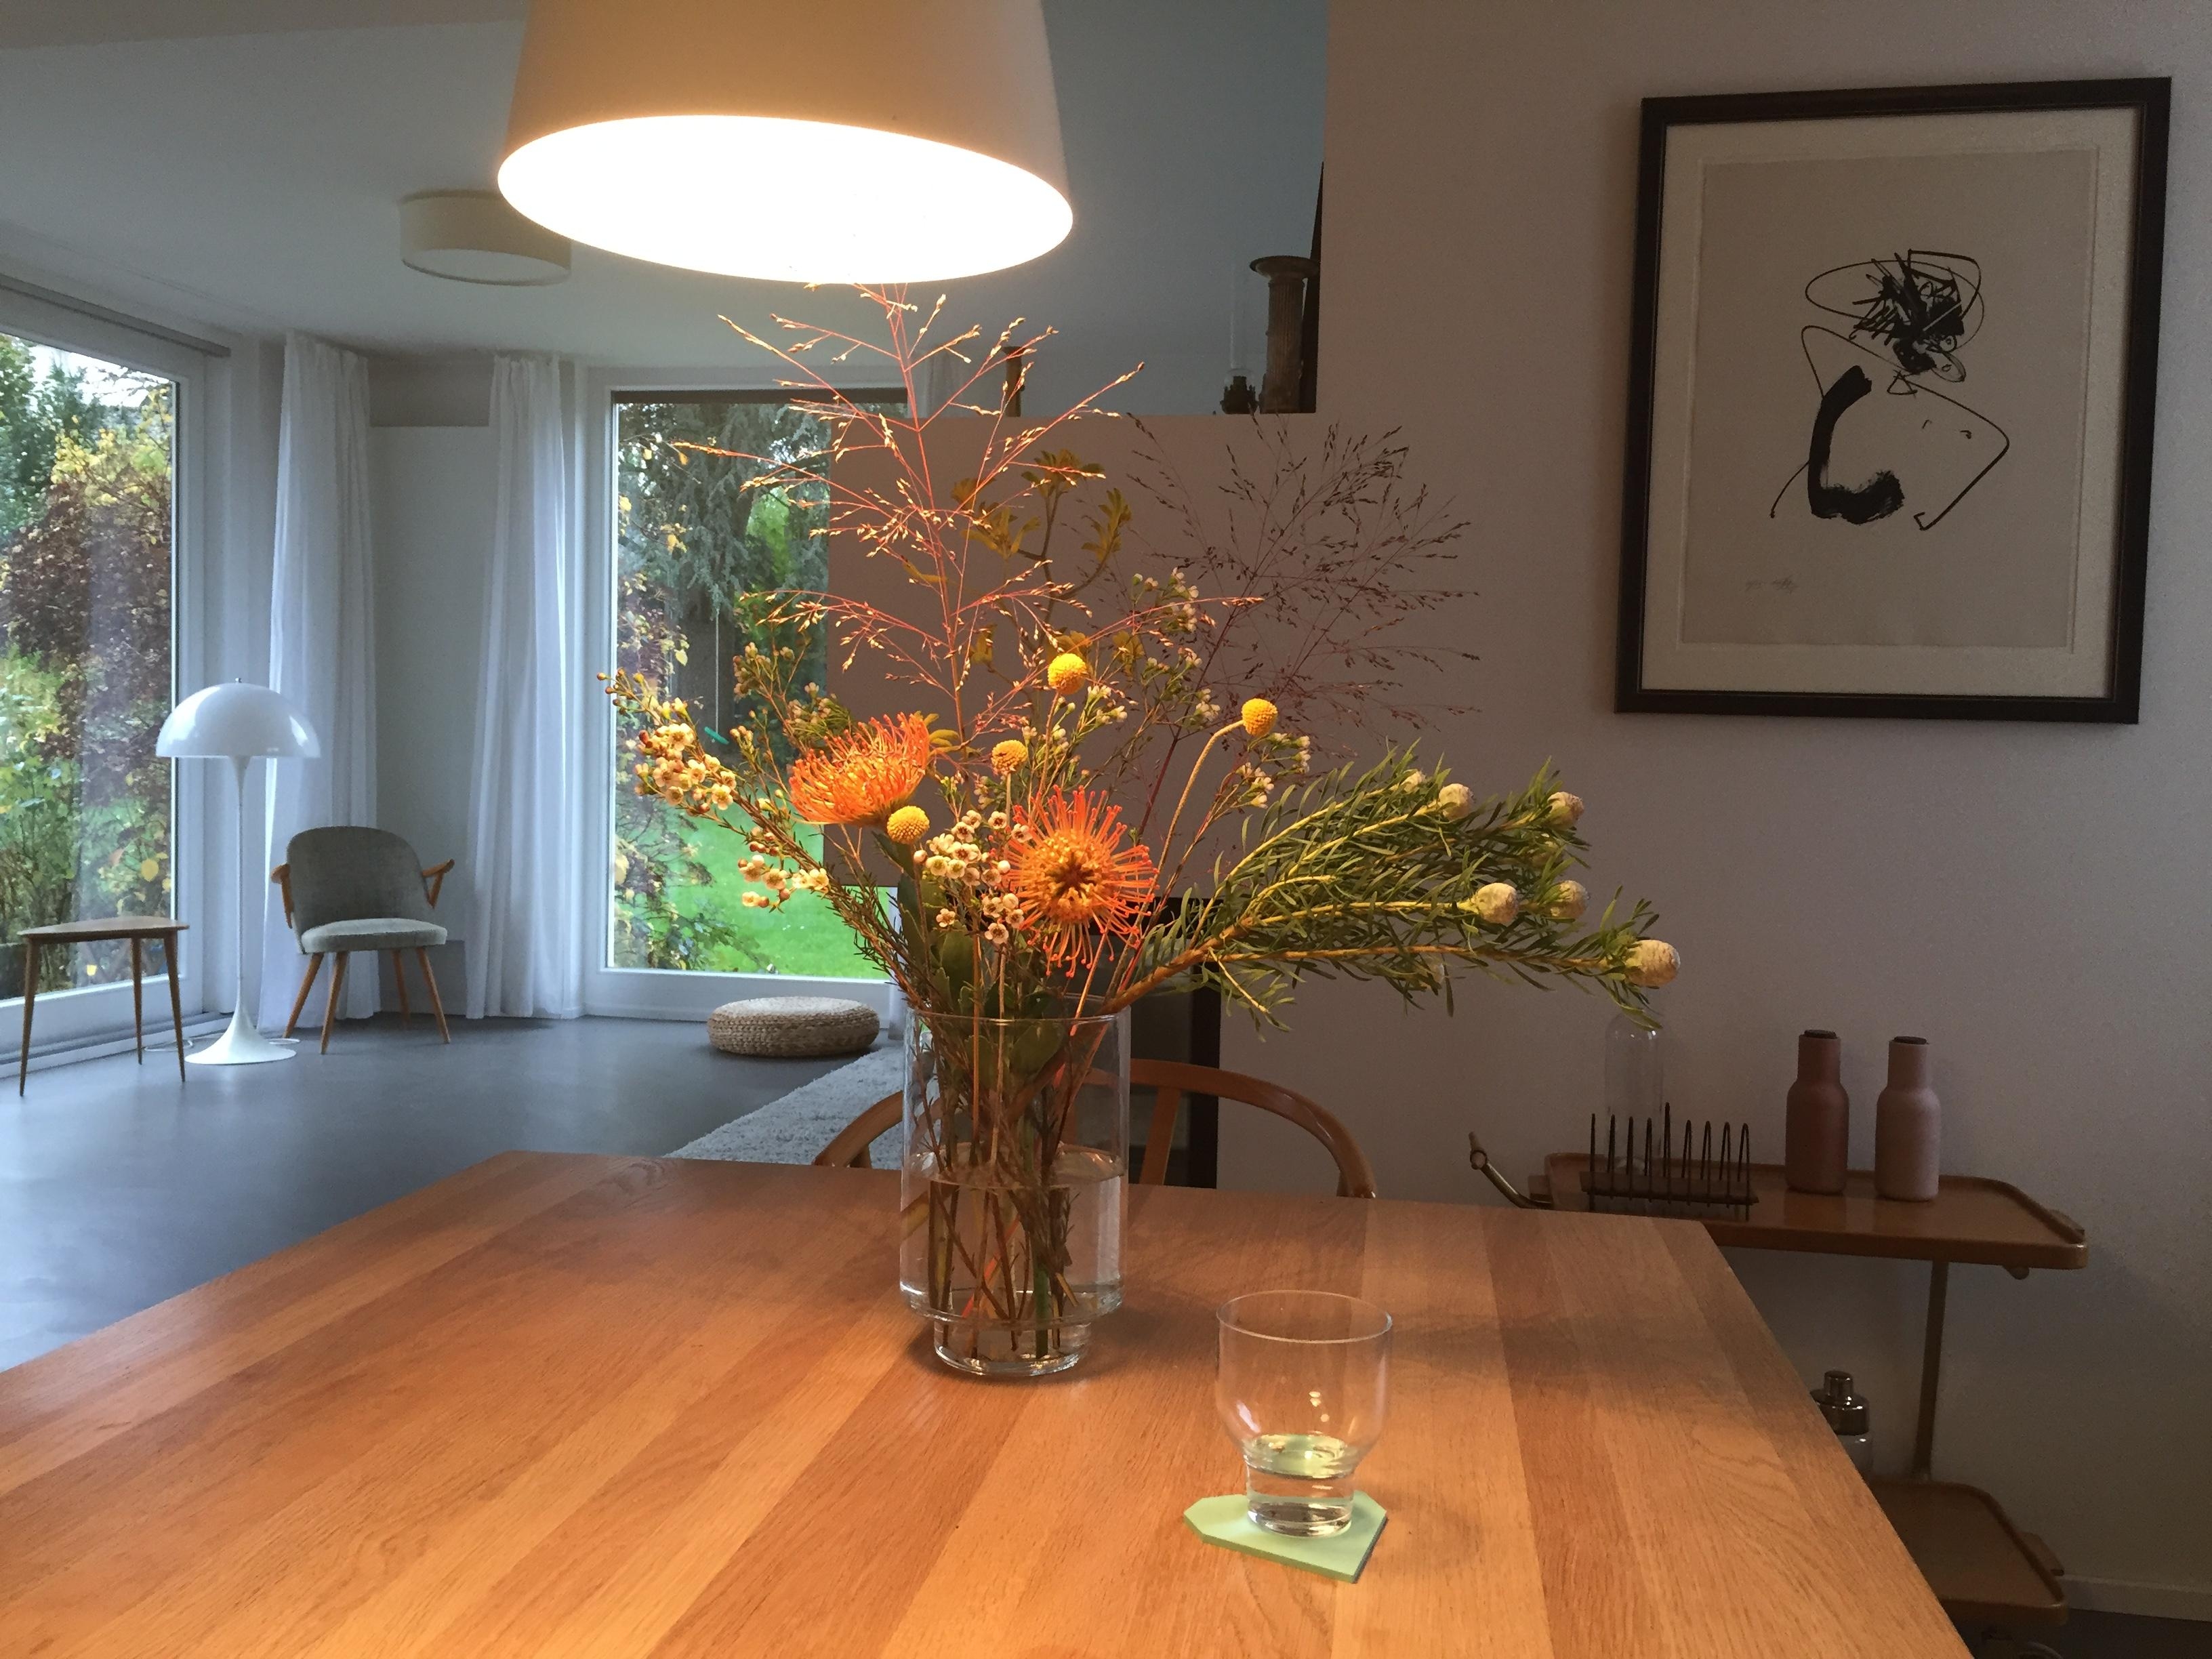 Herbstblumen 
#vintage #nordichome #hygge #interiorlove #wohnzimmer